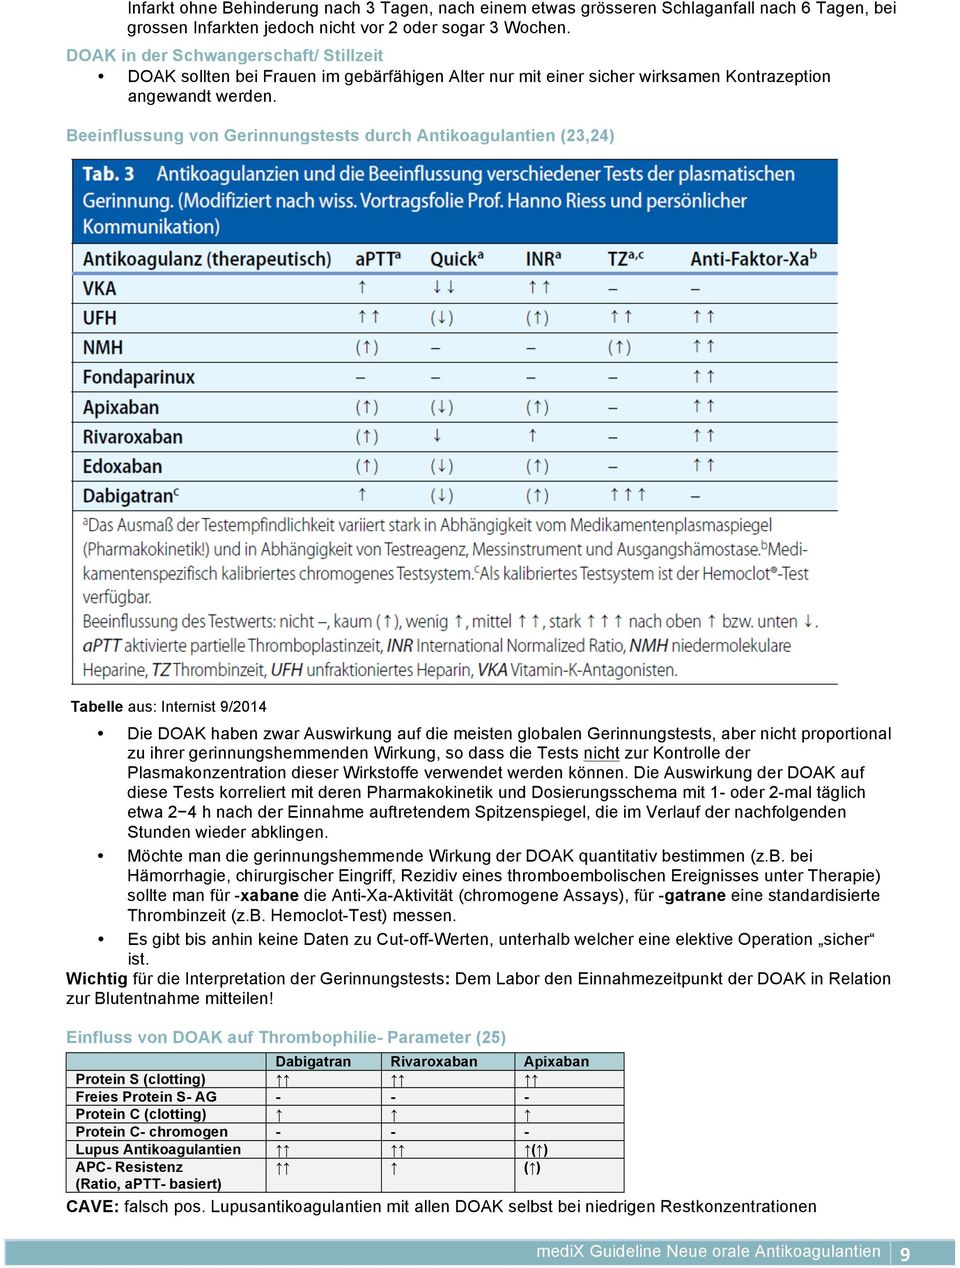 Beeinflussung von Gerinnungstests durch Antikoagulantien (23,24) Tabelle aus: Internist 9/2014 Die DOAK haben zwar Auswirkung auf die meisten globalen Gerinnungstests, aber nicht proportional zu